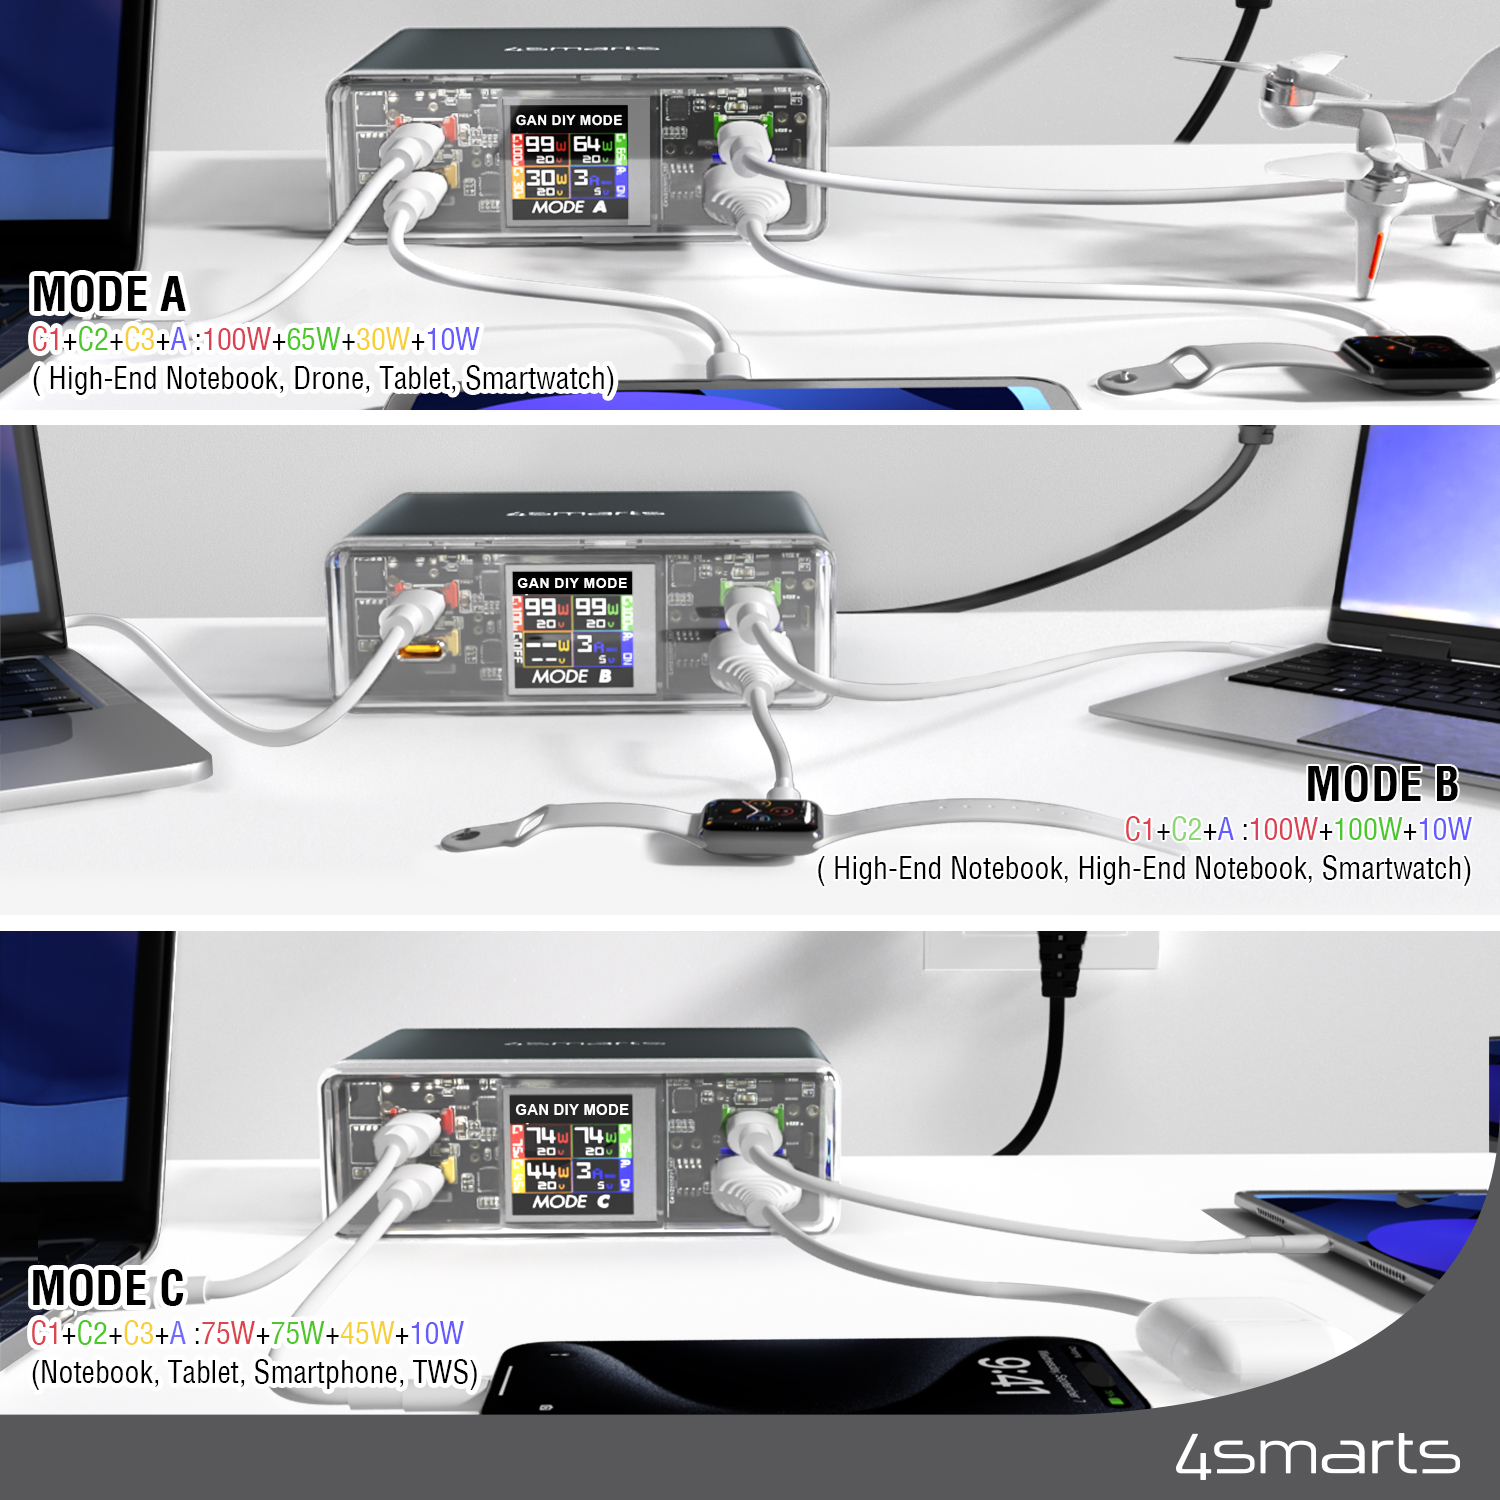 Der 4smarts Desk Charger Lucid GaN DIY MODE verfügt über 210W und 3 vordefinierte Leistungsmodi für verschiedene Ladeanforderungen.